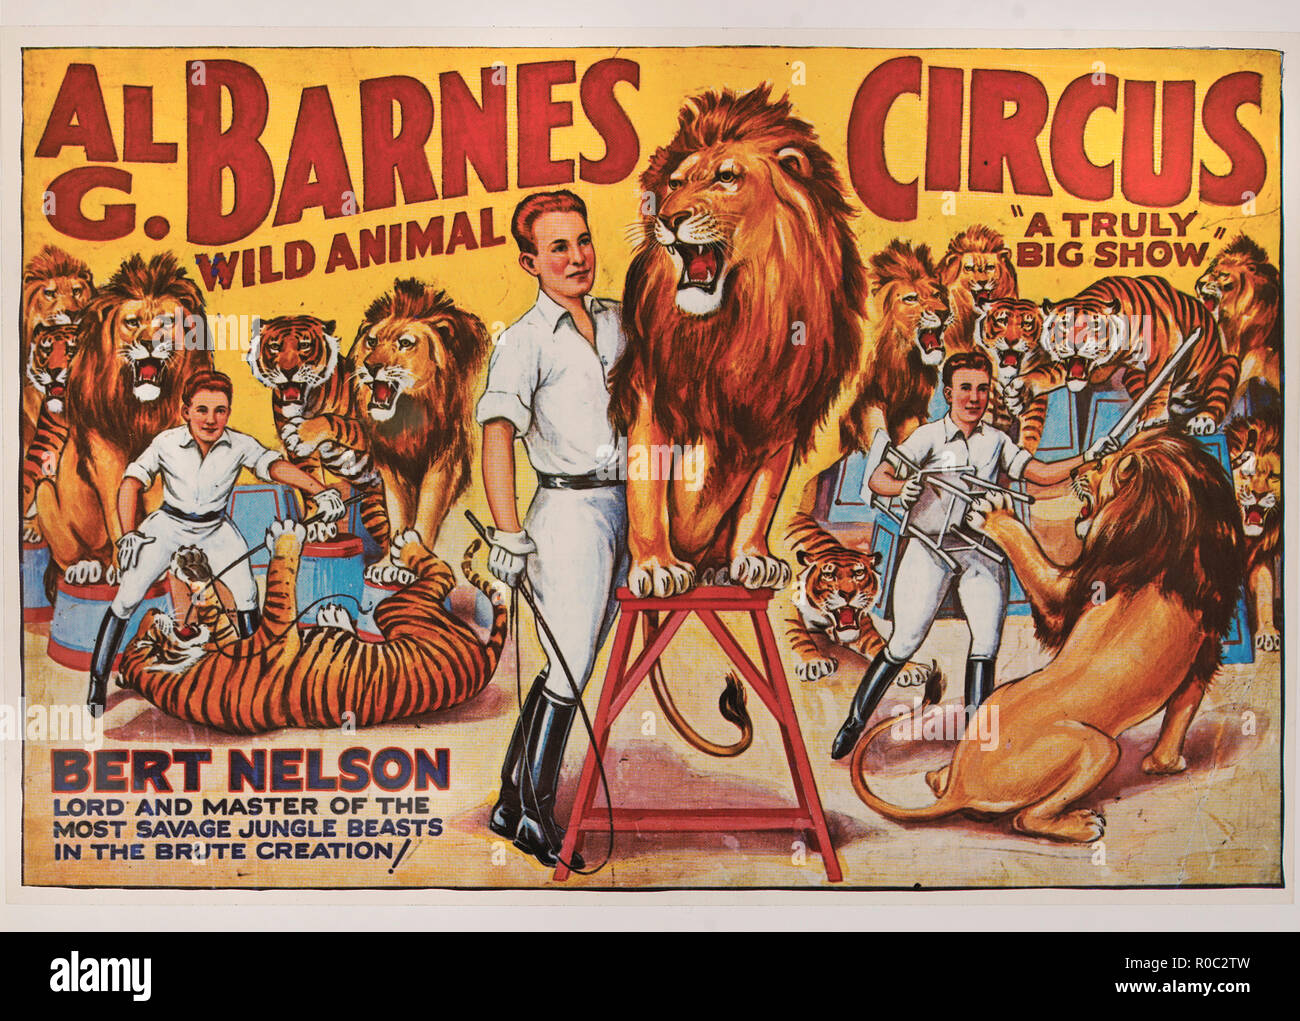 Al G. Barnes Wild Animal Circus, Bert Nelson signore e padrone delle più selvagge bestie della giungla nella creazione bruta!, poster di circo, litografia, 1930 Foto Stock